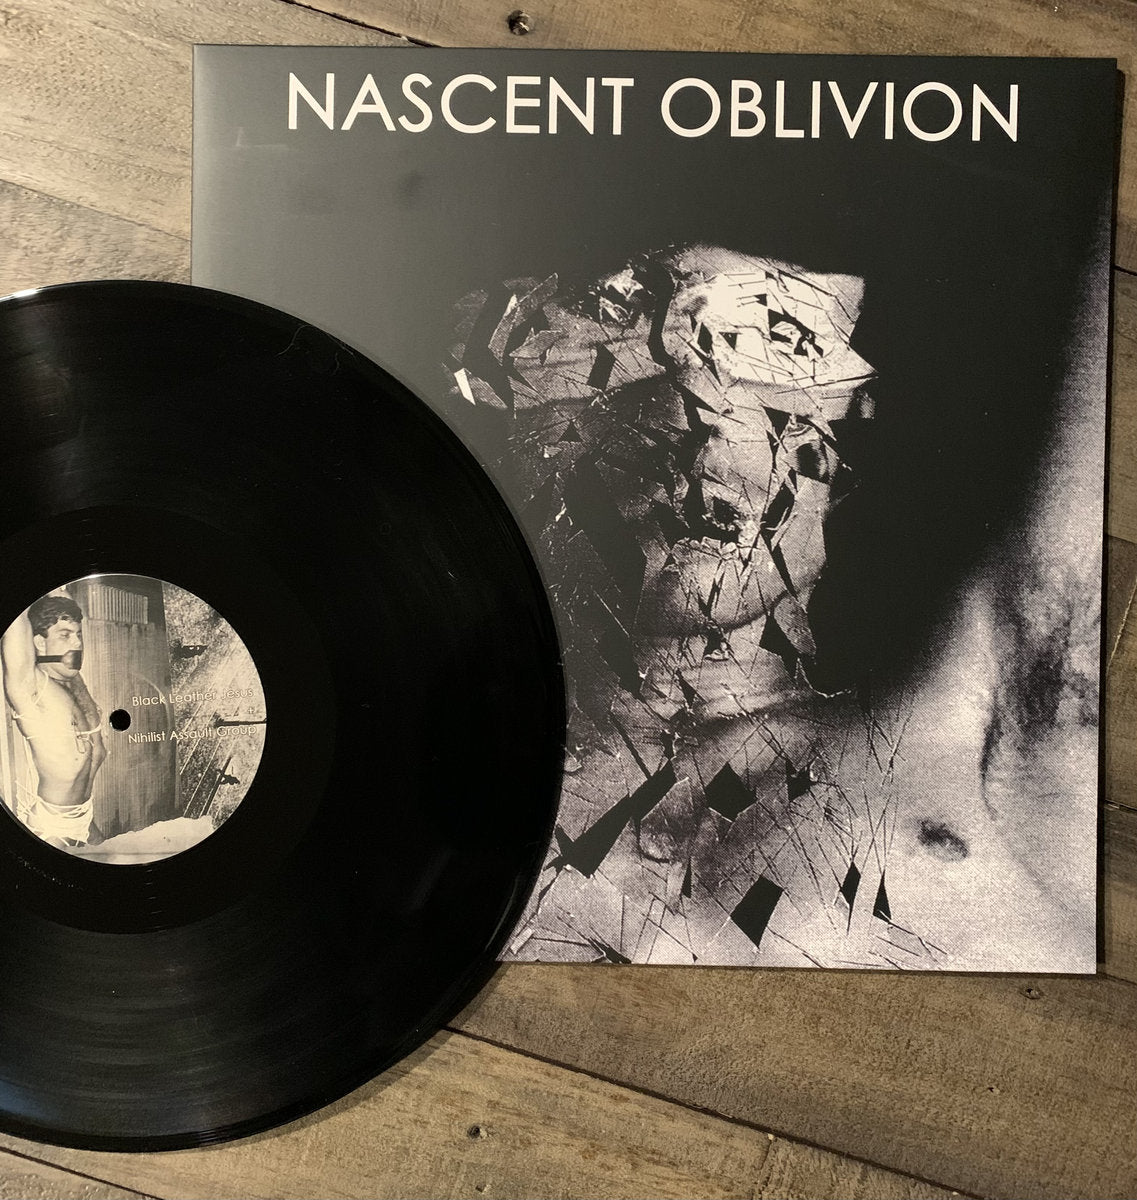 Nihilist Assault Group + Black Leather Jesus / Pain Apparatus - Nascent Oblivion LP